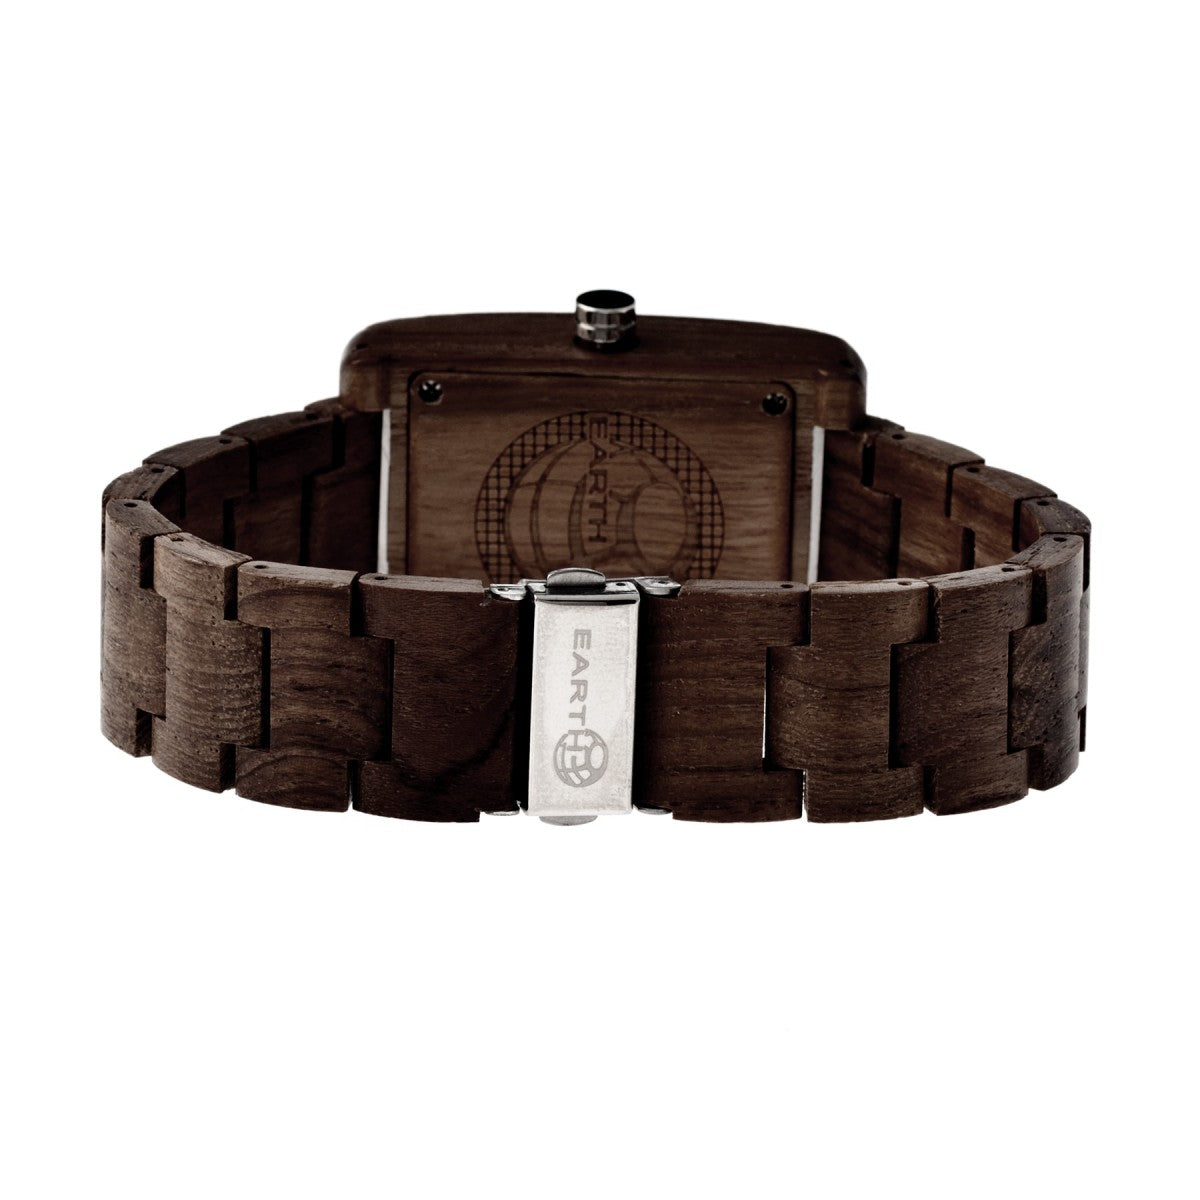 Earth Wood Trunk Bracelet Watch w/Date - Dark Brown - ETHEW2602